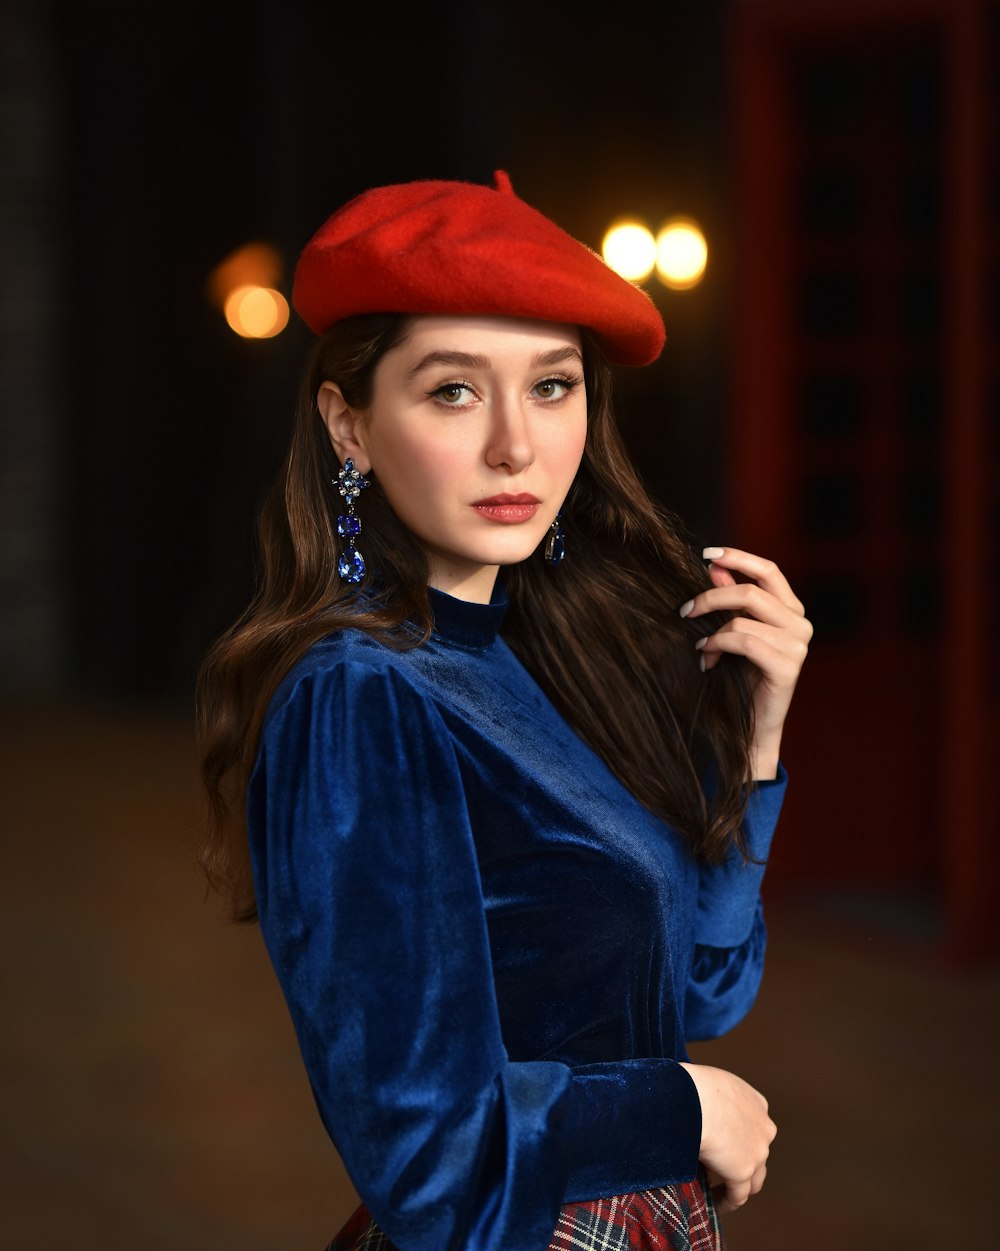 青いドレスと赤い帽子をかぶった女性